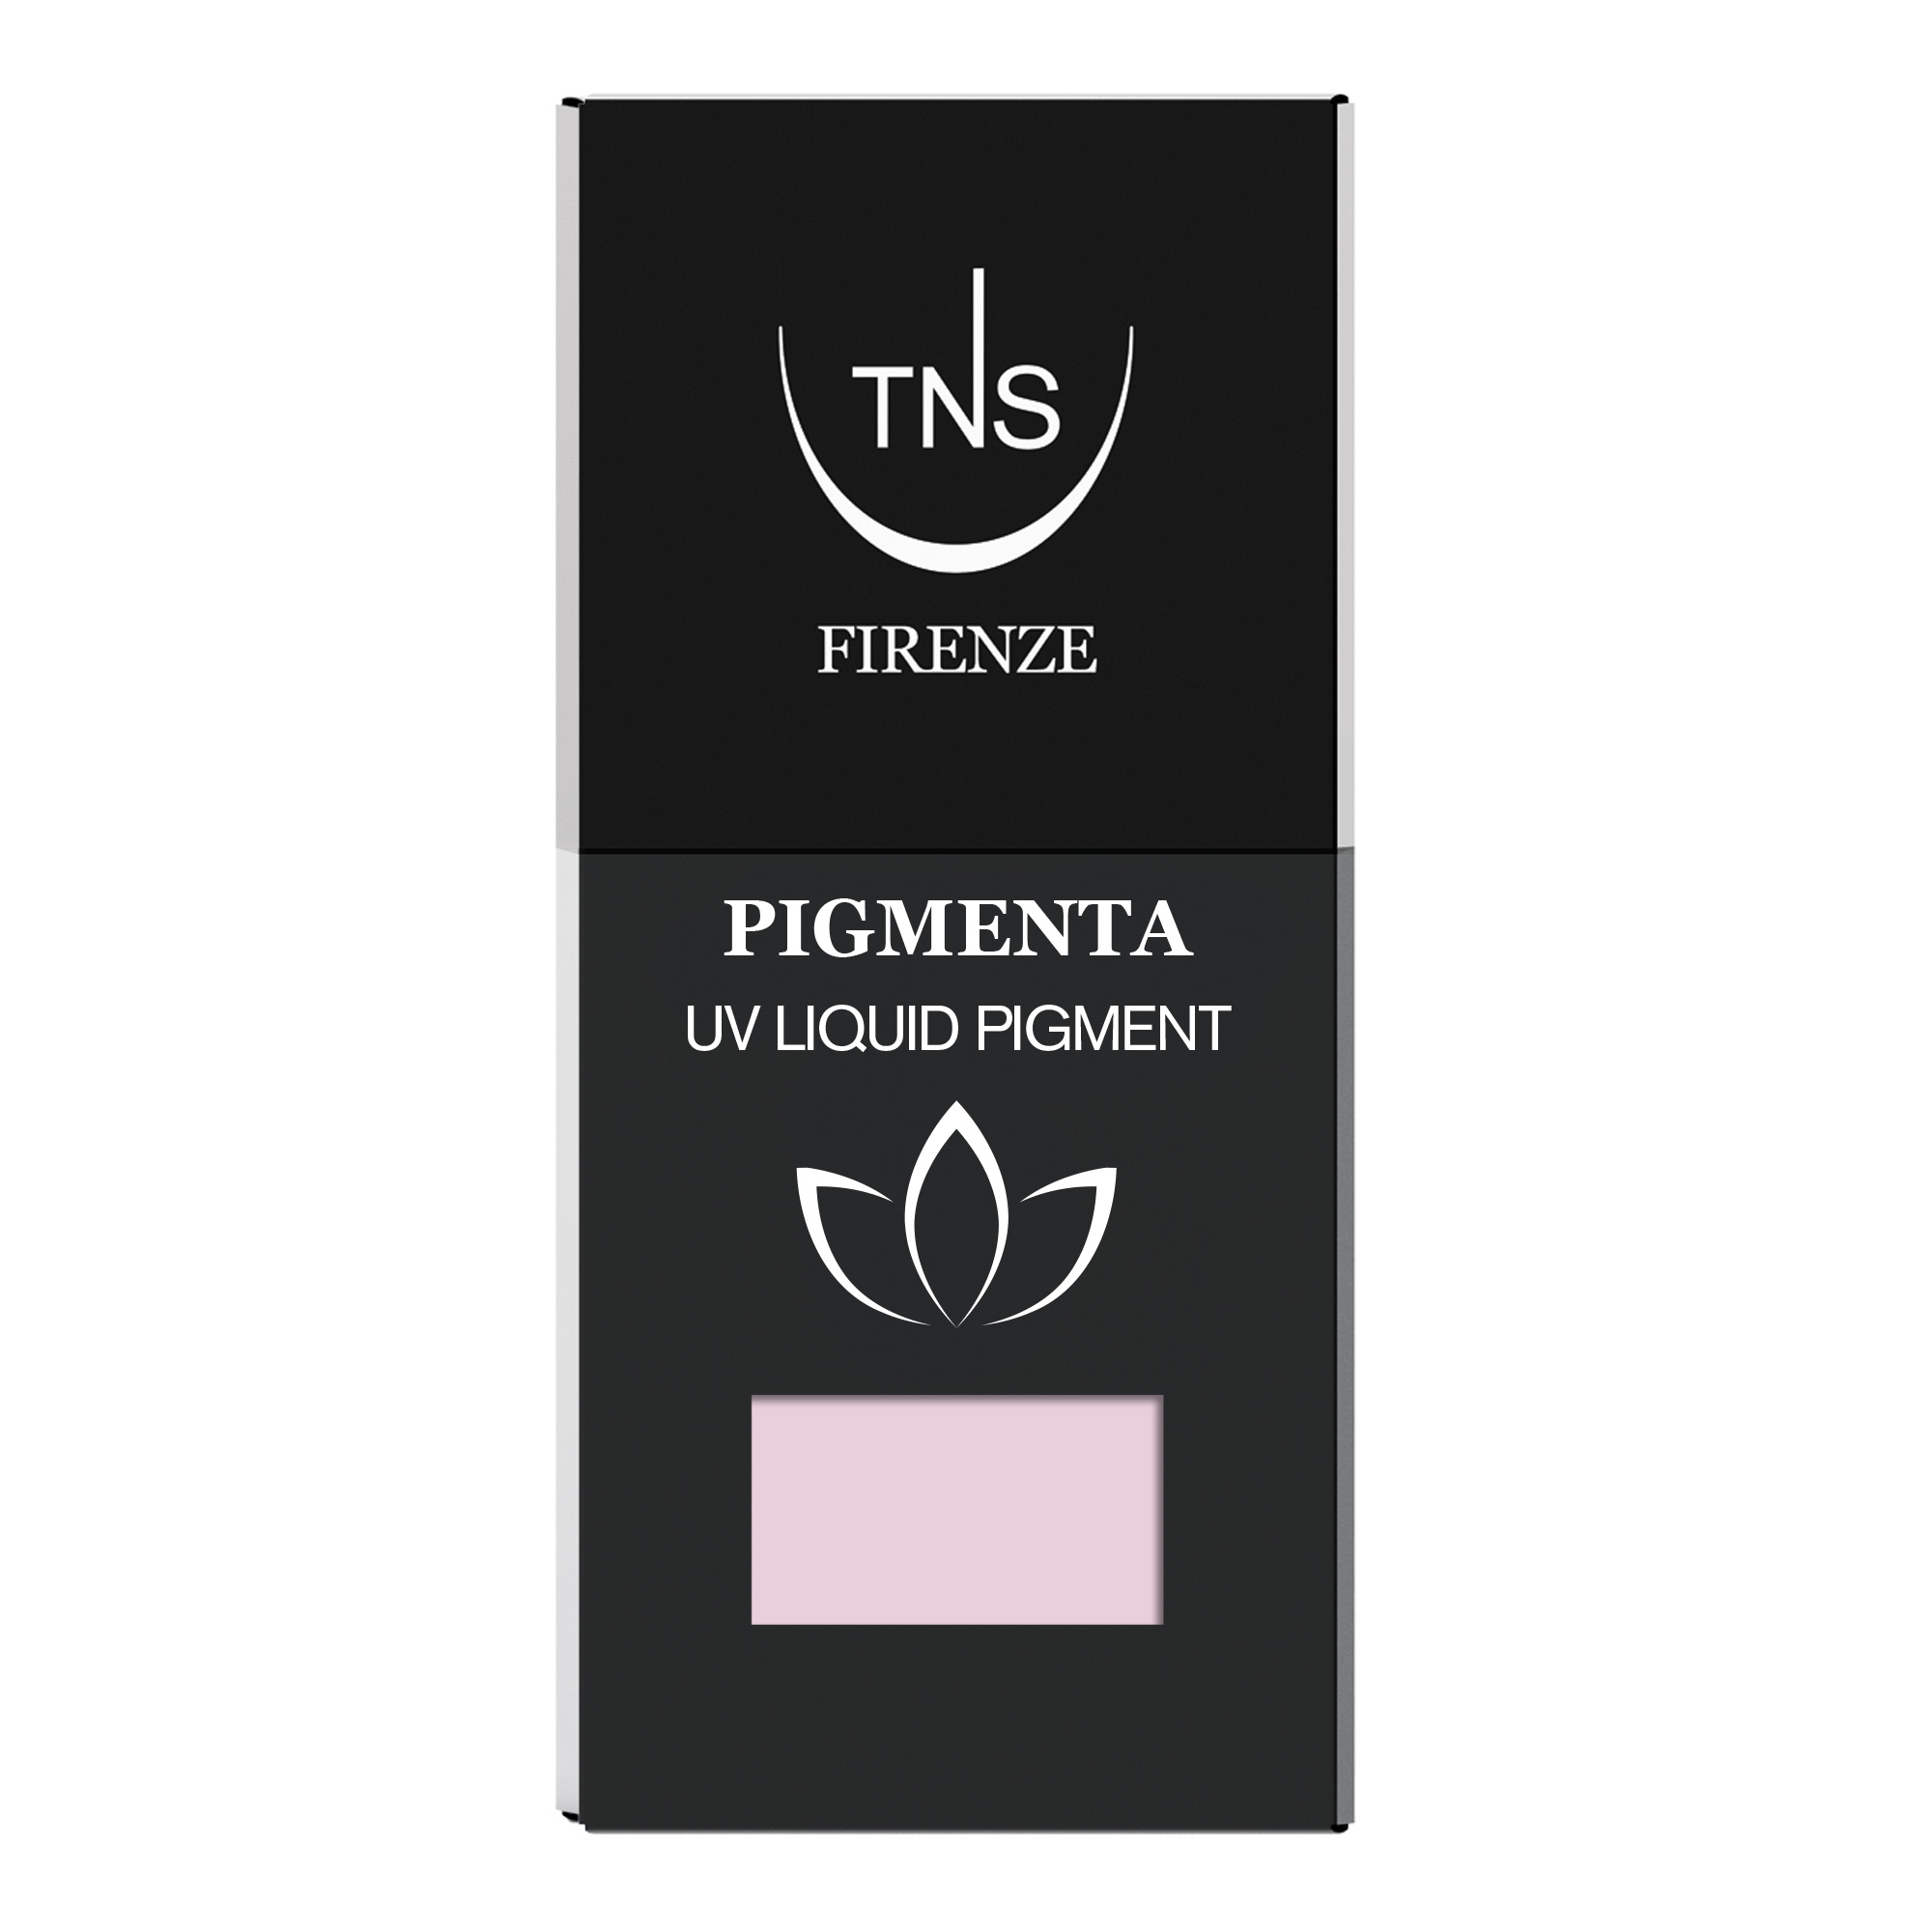 Pigment liquide UV Pink Passion rose clair 10 ml Pigmenta TNS